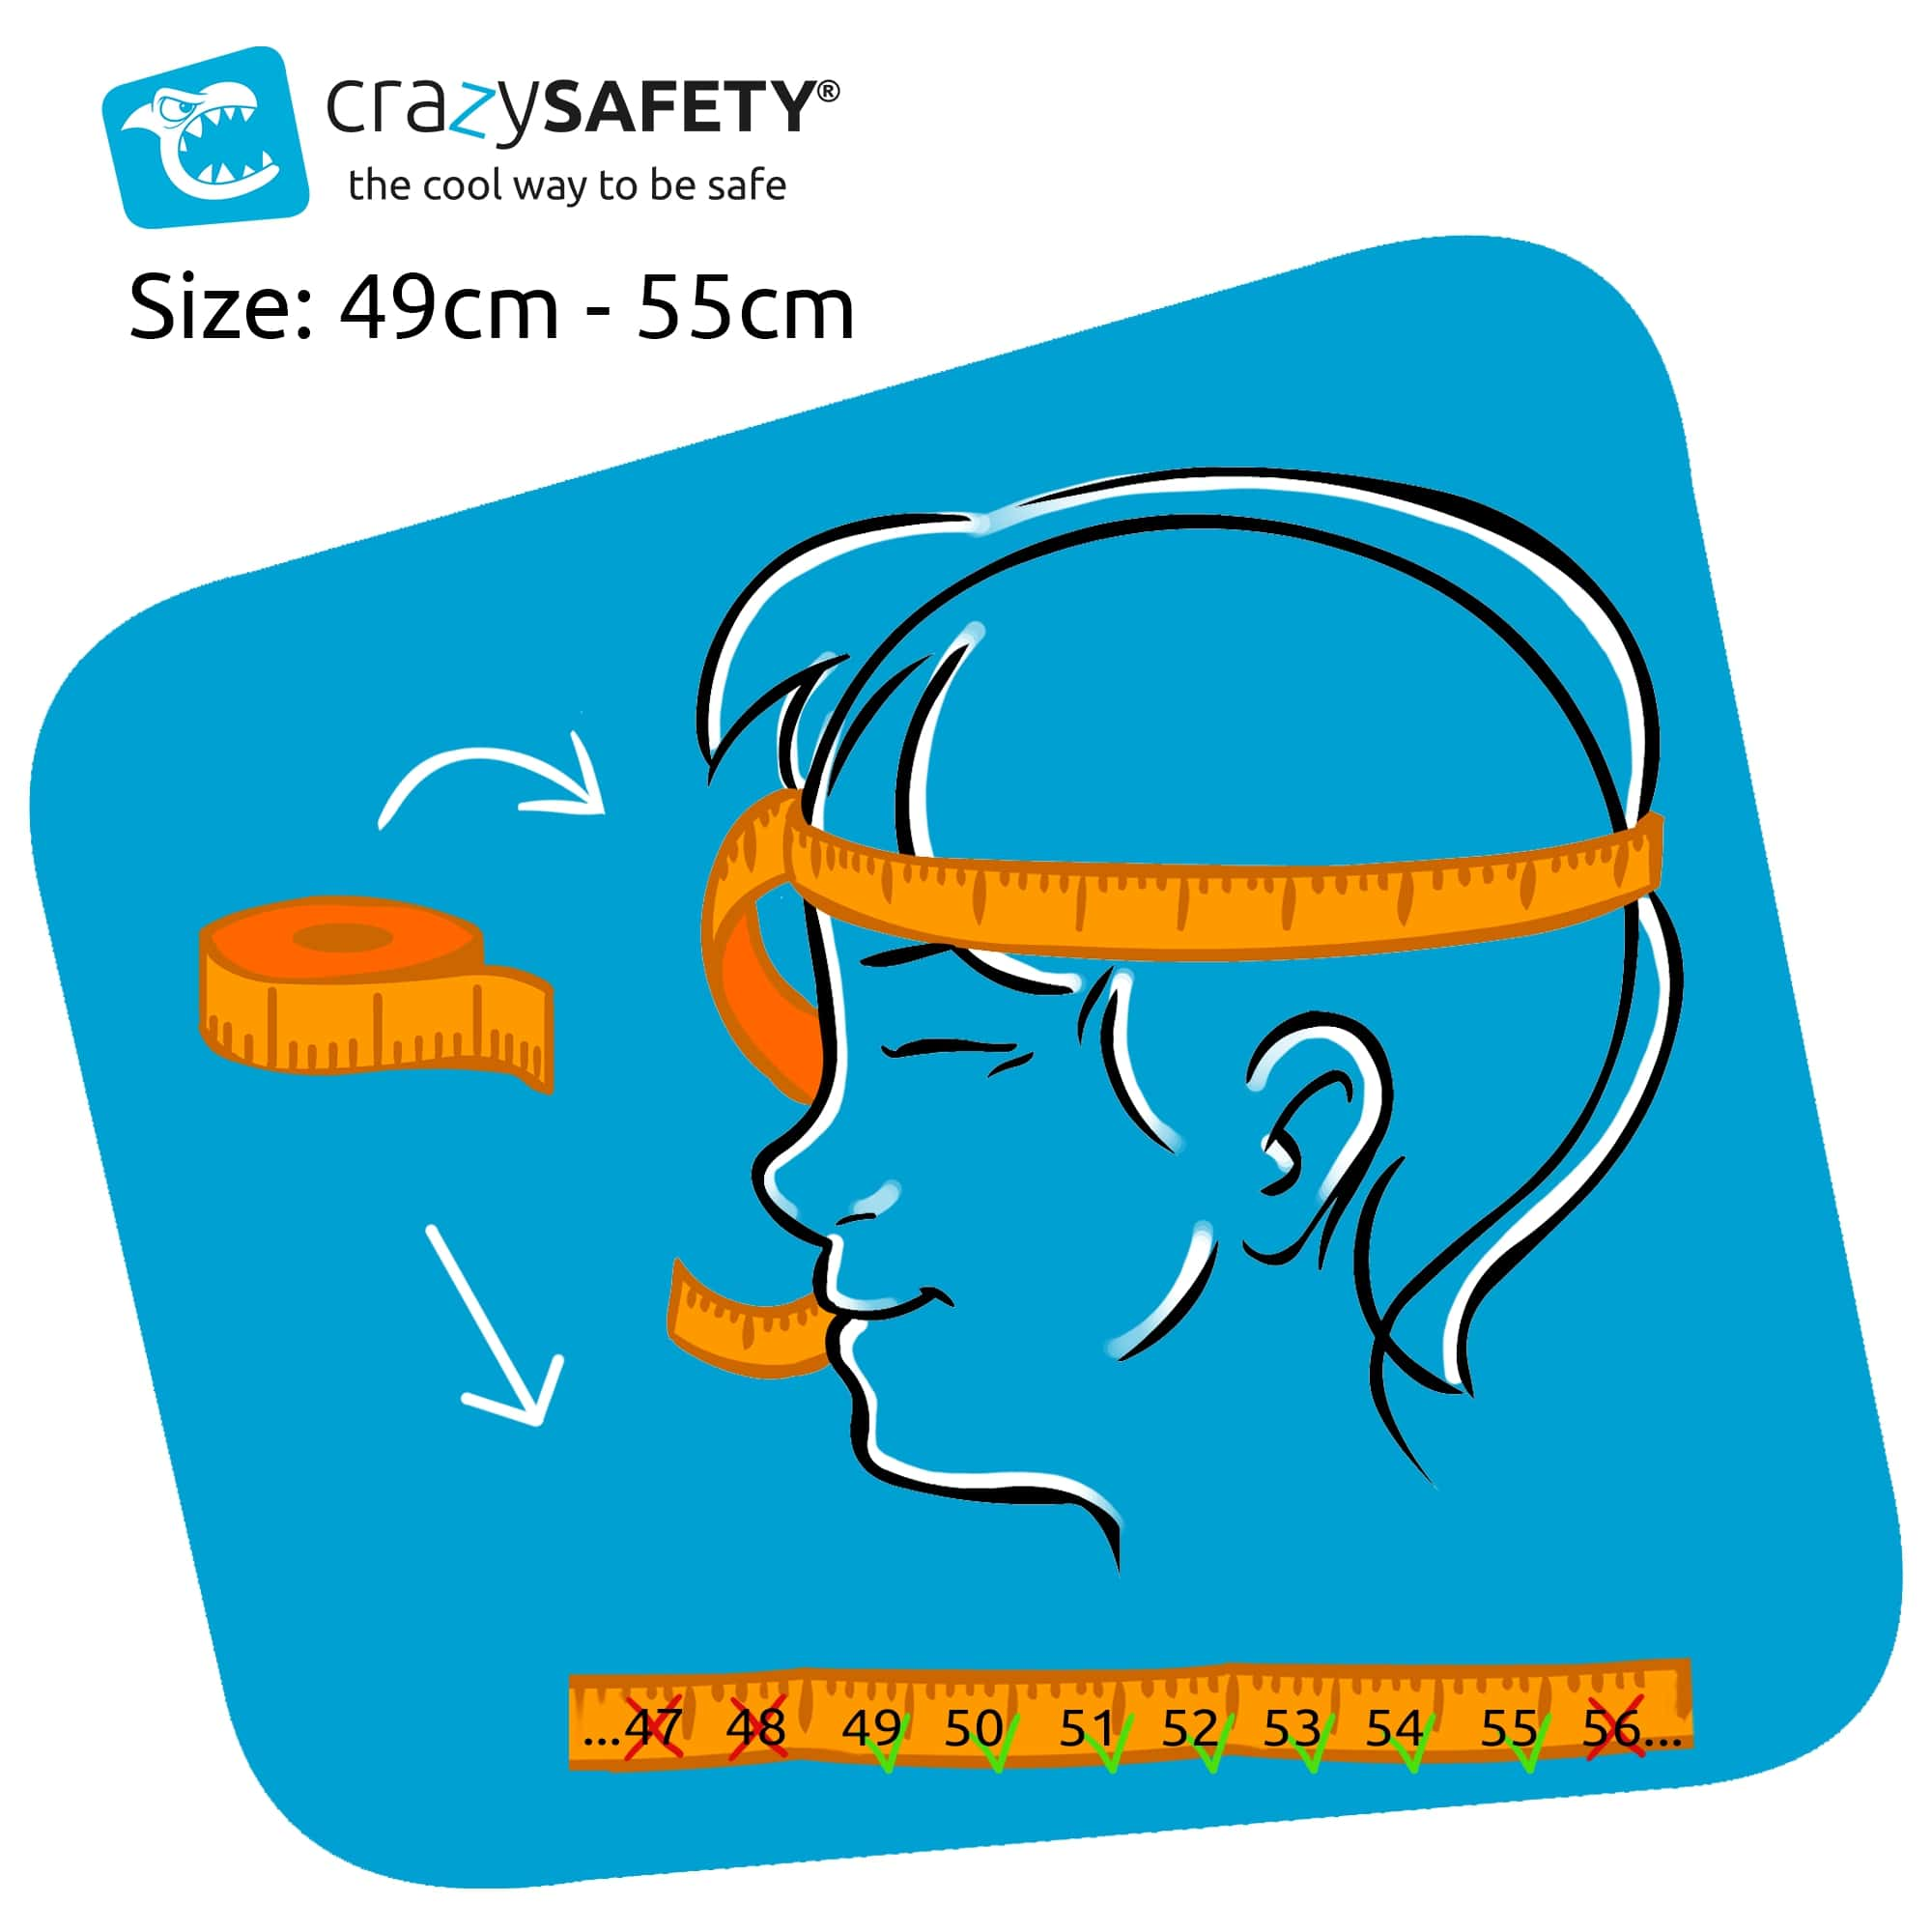 Fahrradhelm Safety SAFETY EN1078 US Crazy für | Geprüft, CRAZY cm, | Kinder | 49-55cm Brown) Brauner Football